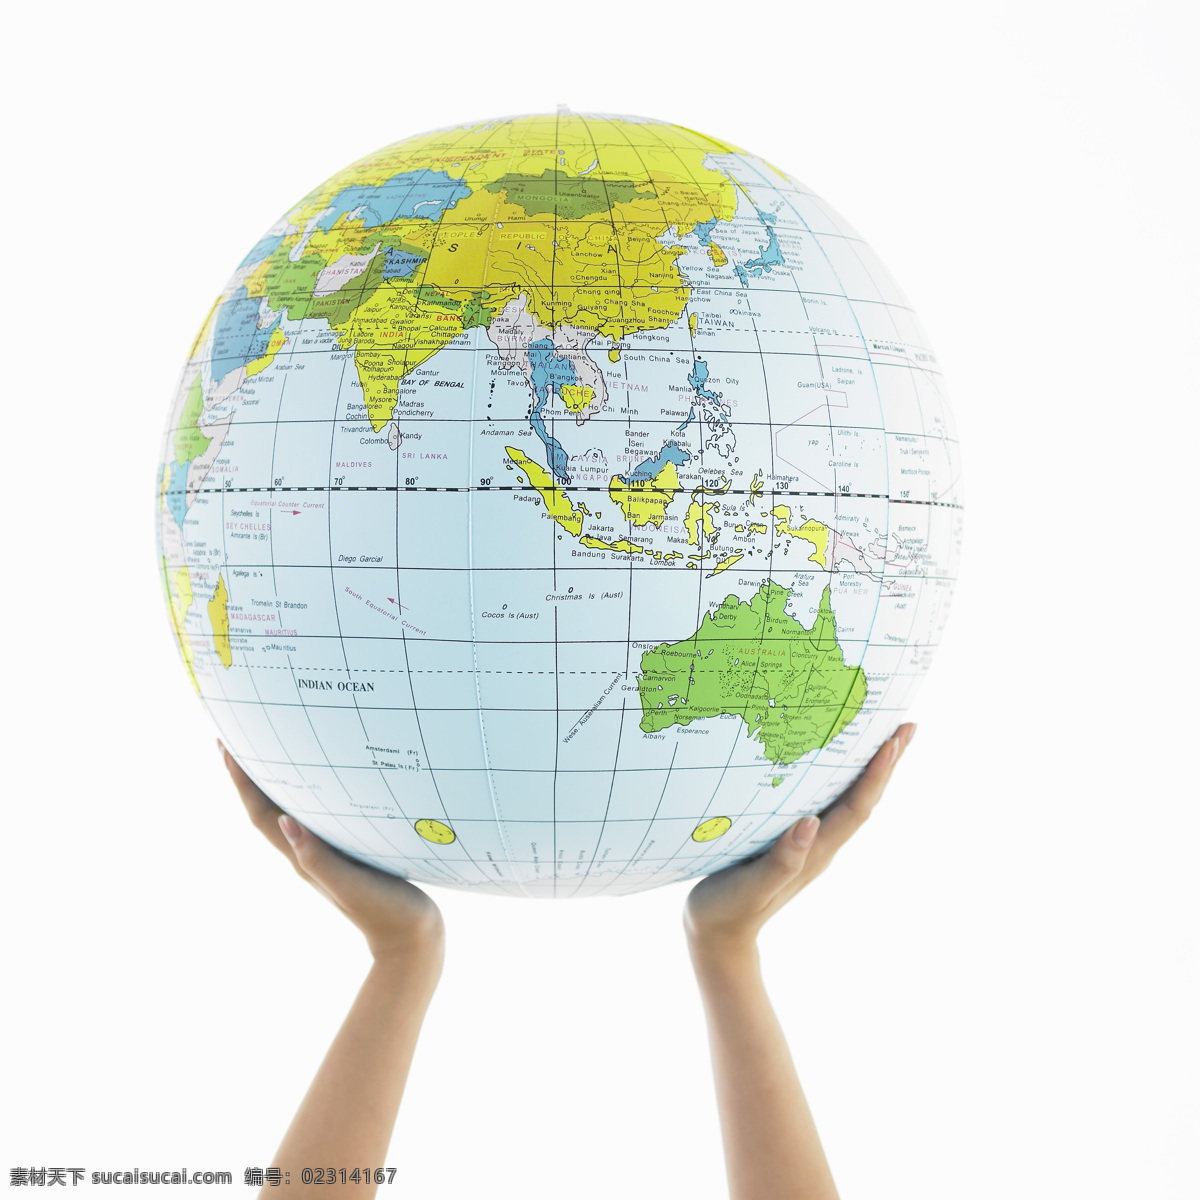 地球仪 手捧地球仪 托起地球仪 地球模型 商务合作 沟通交流 全球合作 全球商务合作 绿色地球 手势表达 其他人物 人物图库